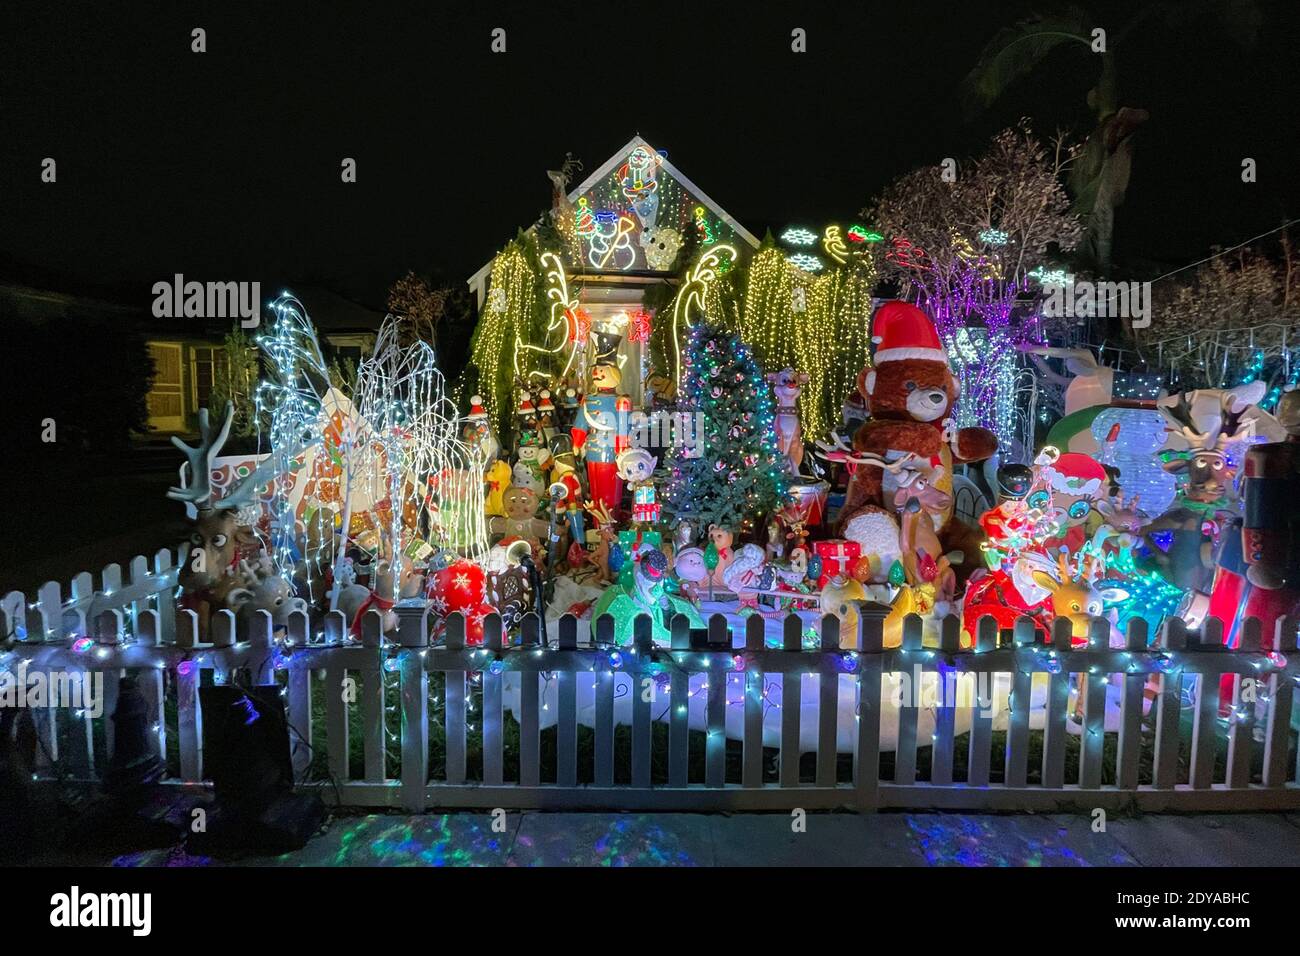 Une exposition de Noël dans une résidence, le jeudi 24 décembre 2020, à Montebello, en Californie. Banque D'Images